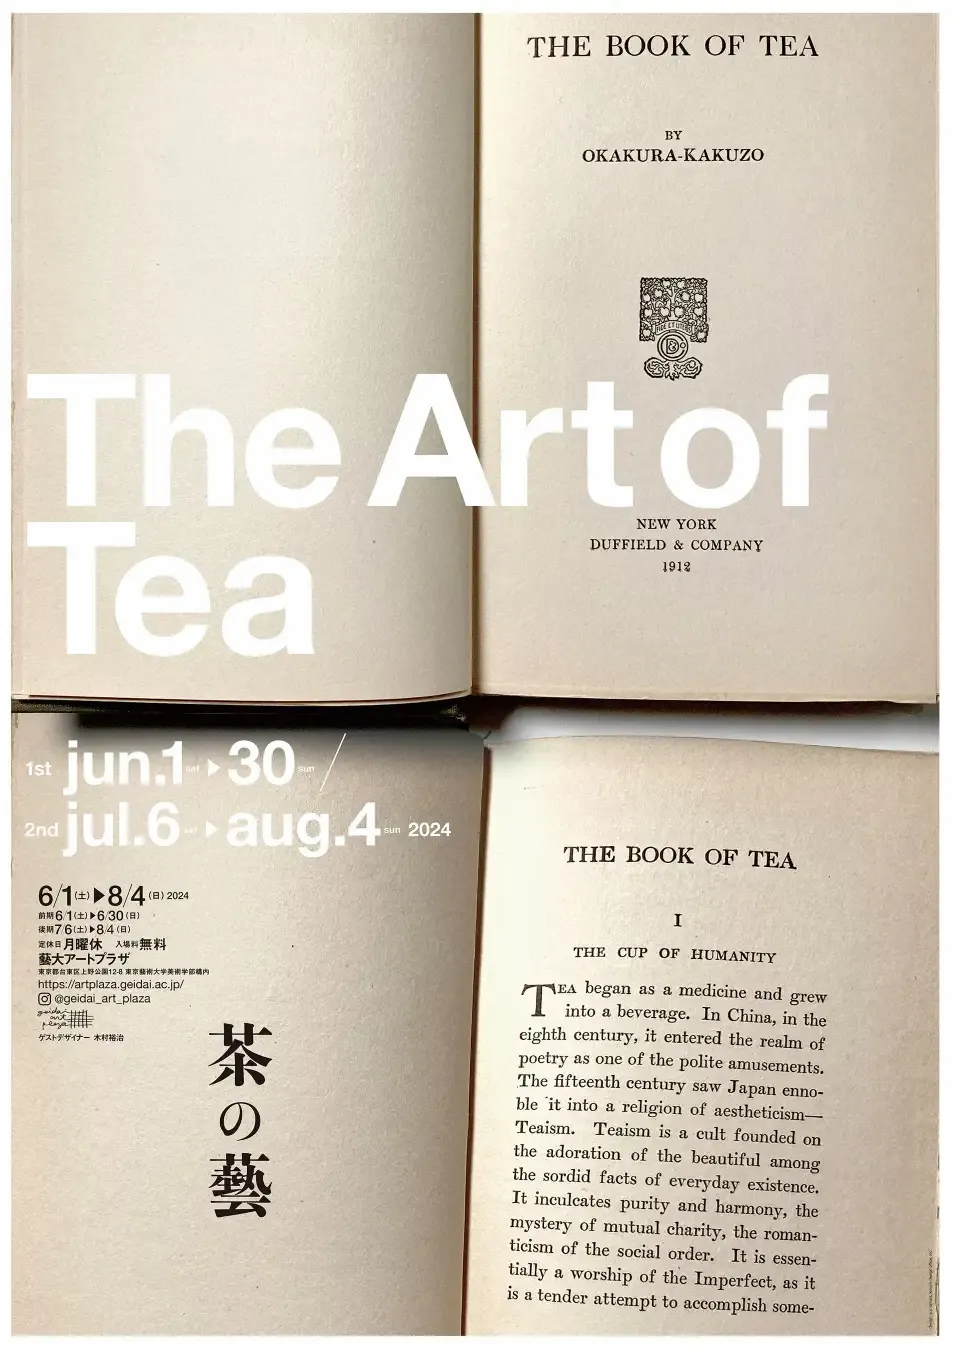 一服の茶のようにアートを楽しむ。藝大アートプラザ 企画展「The Art of Tea」開催 - massive